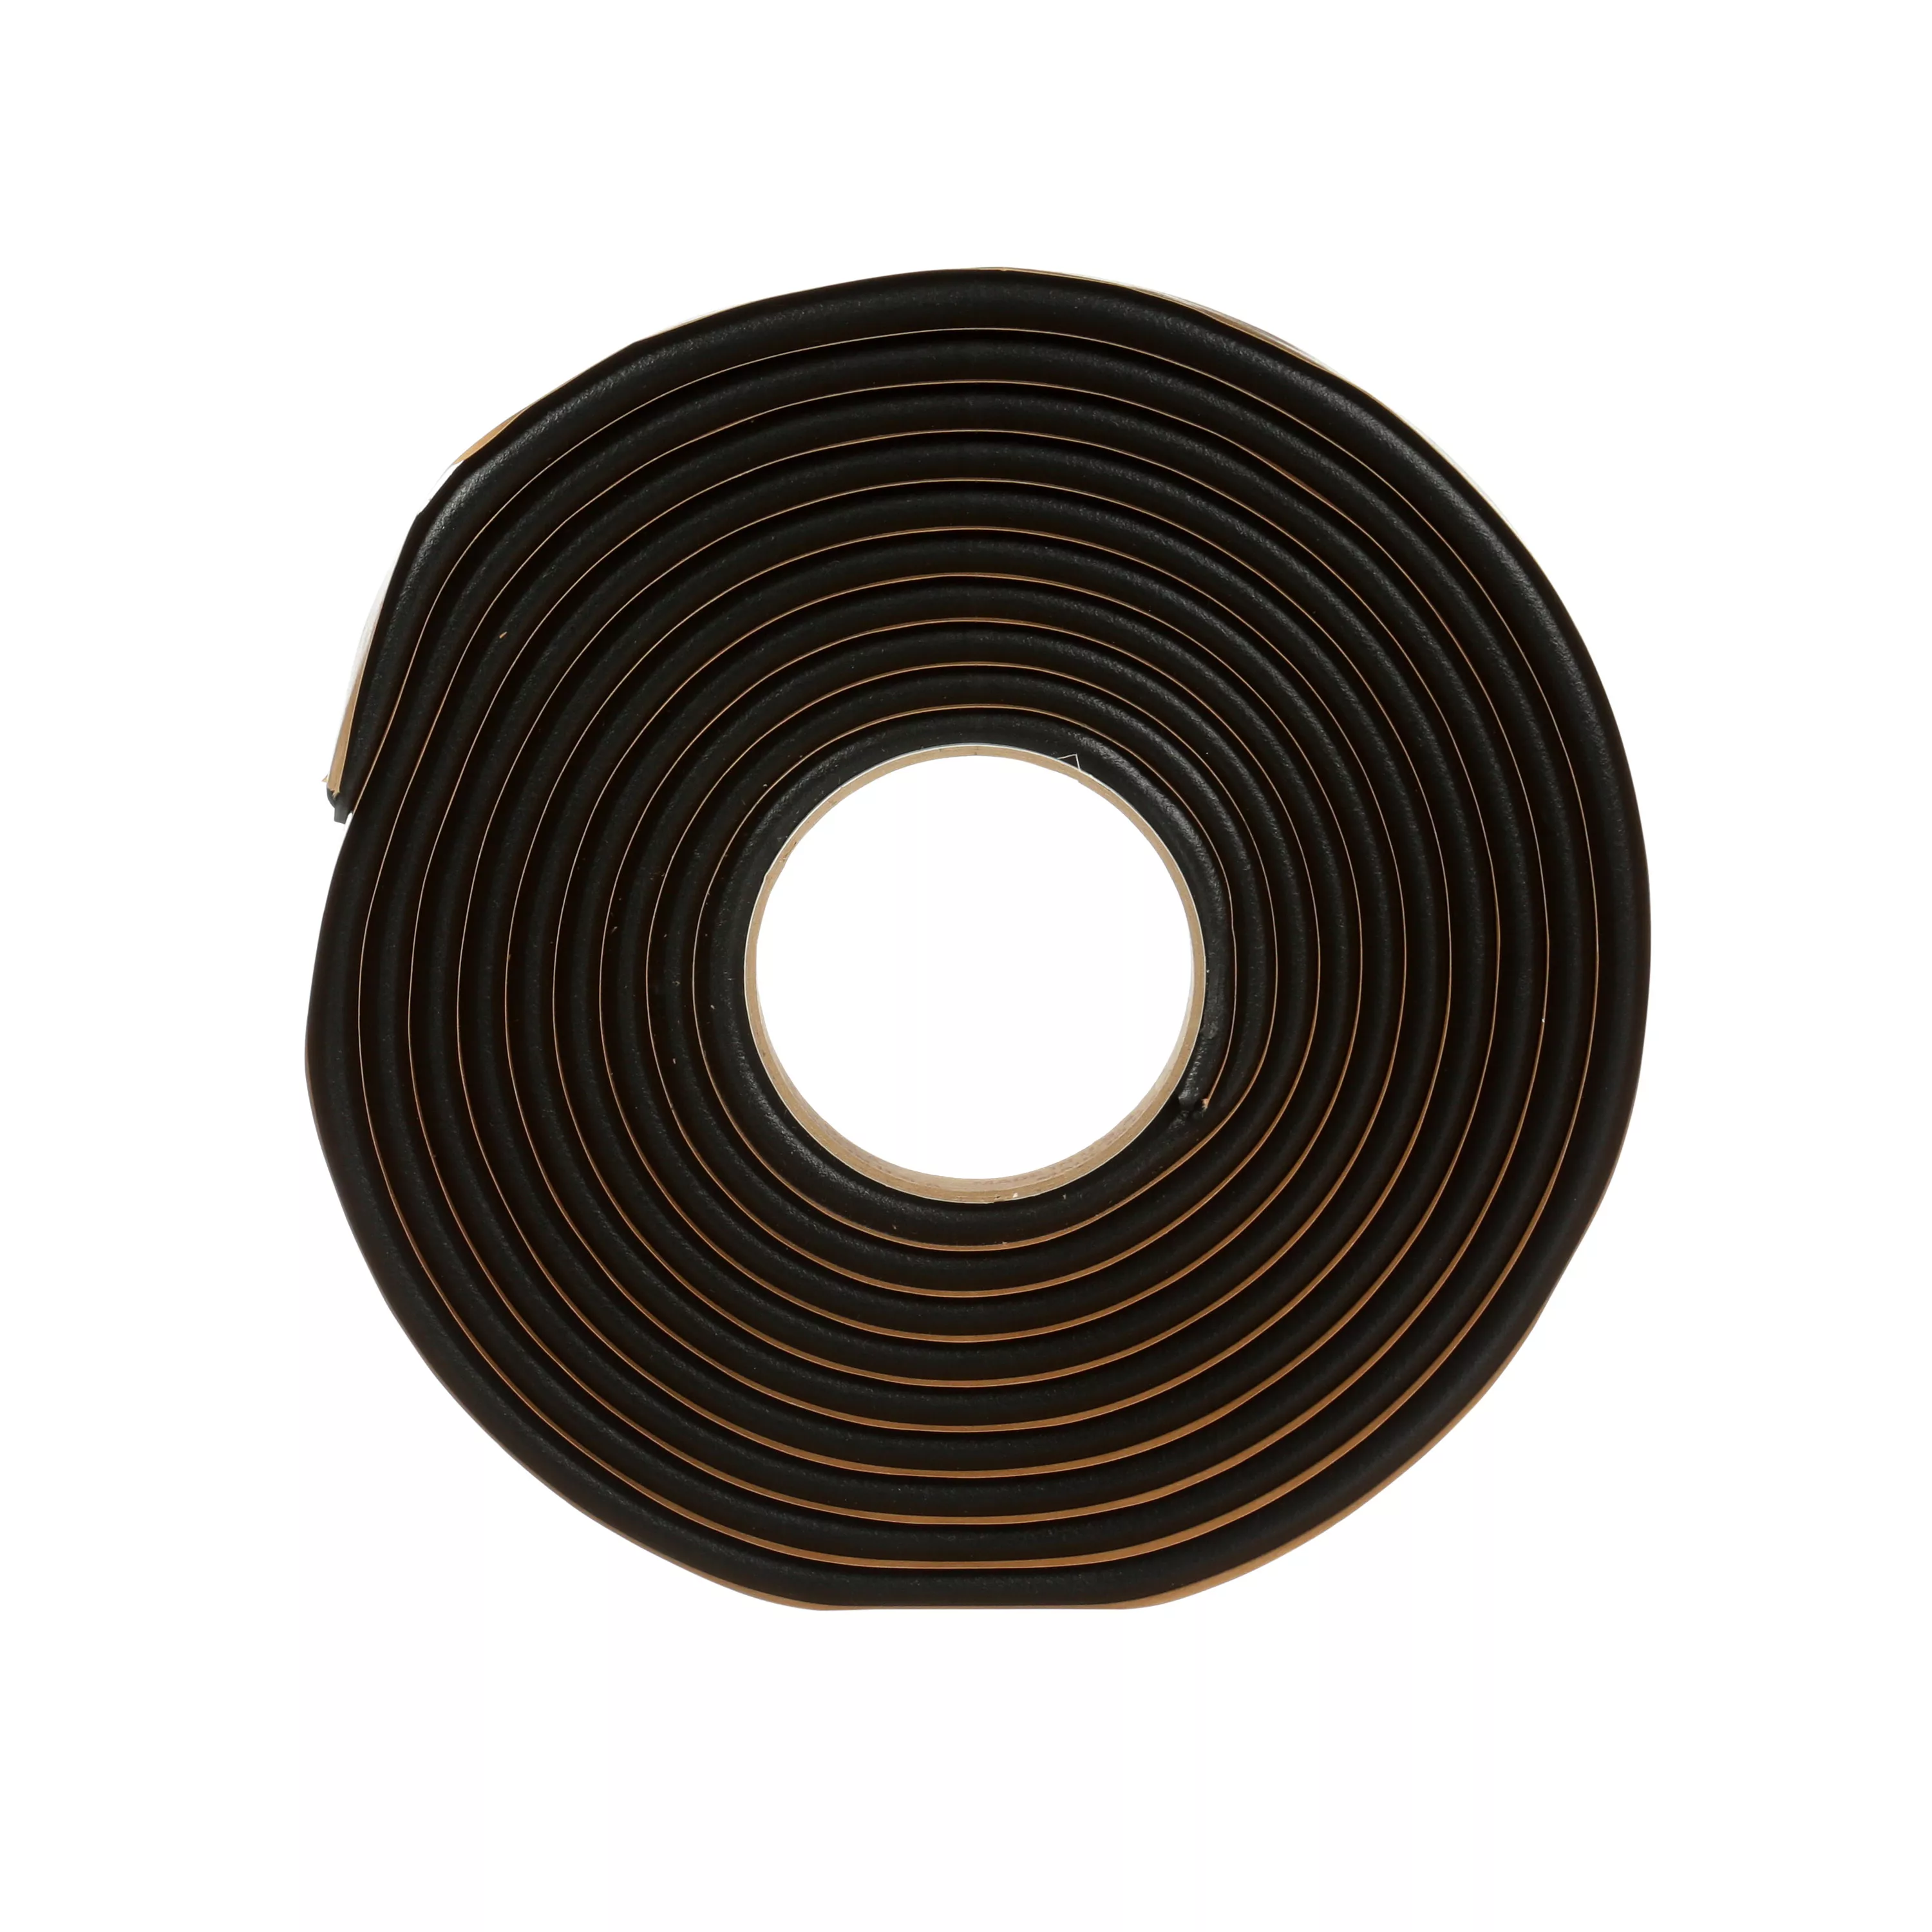 3M™ Windo-Weld™ Round Ribbon Sealer, 08612, 3/8 in x 15 ft Kit, 12 per
case